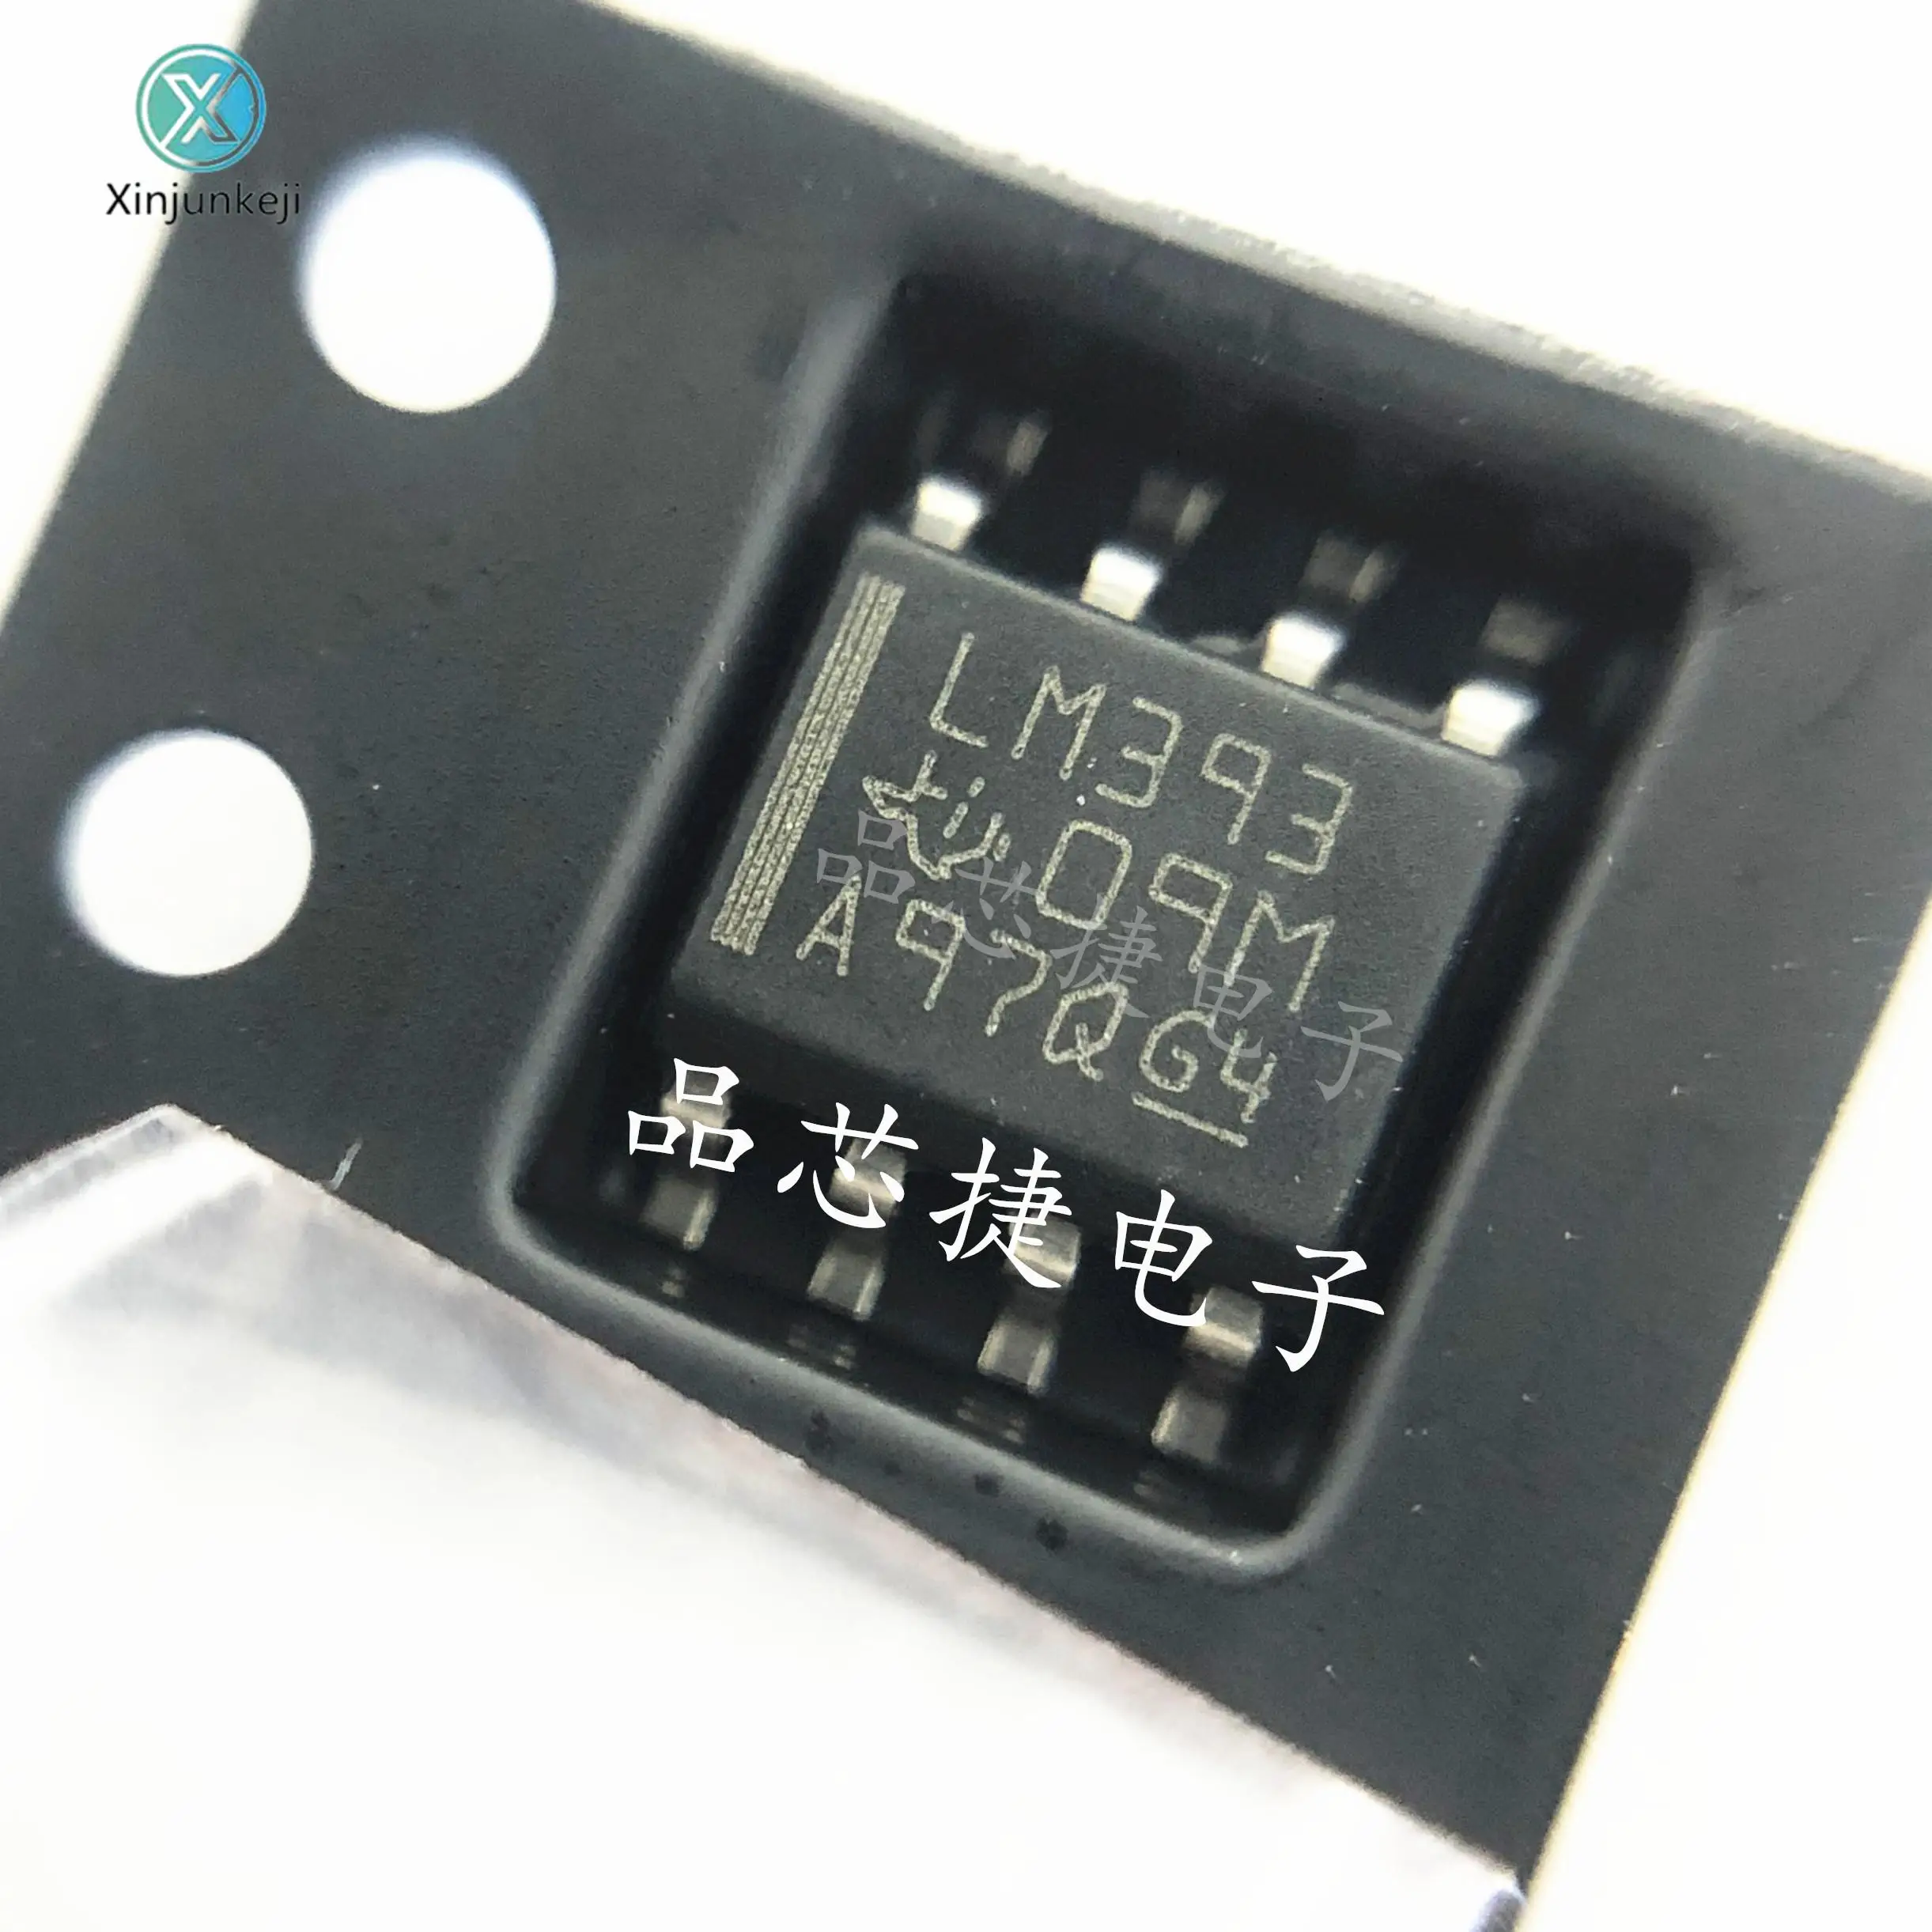 

20 шт. Оригинальный Новый LM393DR LM393D Шелковый экран LM393 SOP8 аналоговый КОМПАРАТОР IC чип